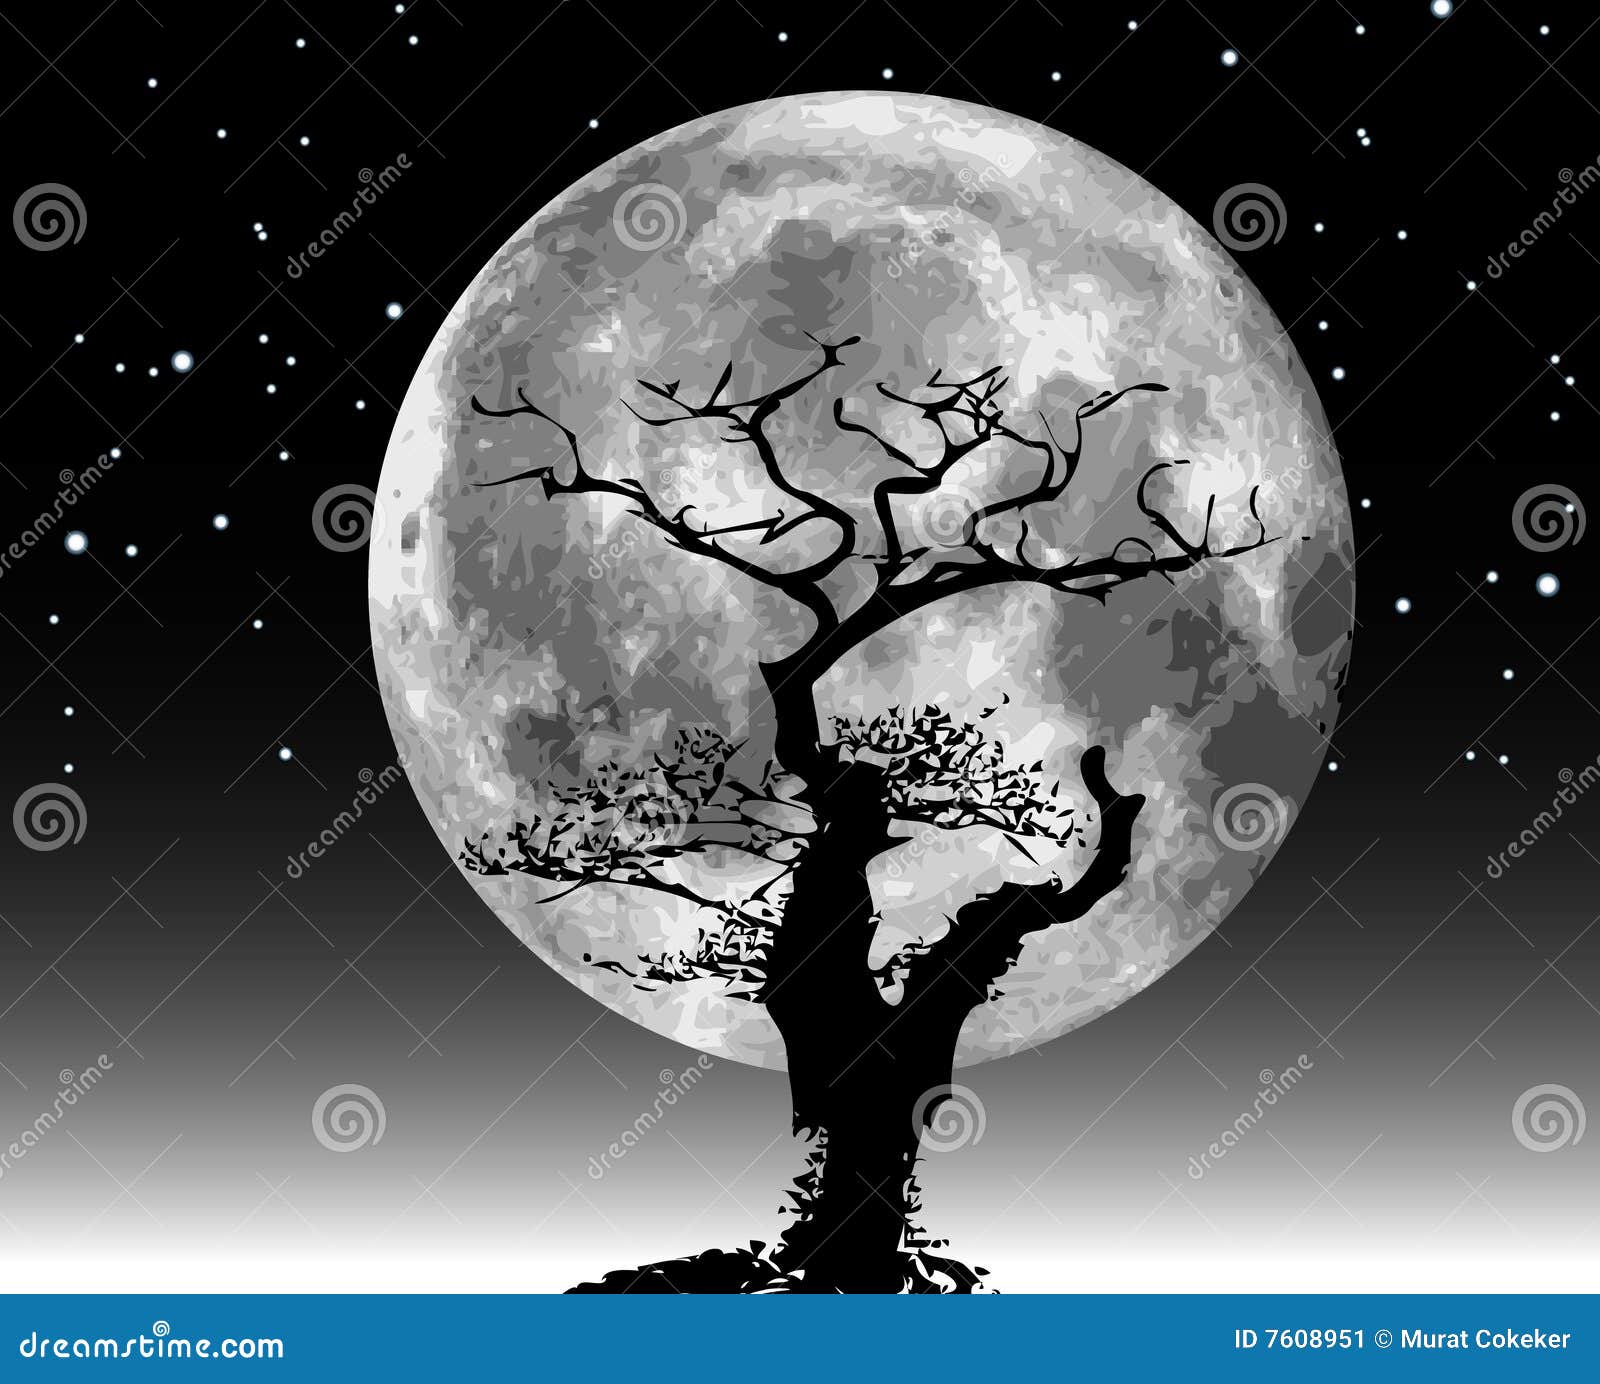 夜晚月亮星空下树上挂着星星树下小猫坐着休息高清图片下载_设计卡通图片_乐美图网